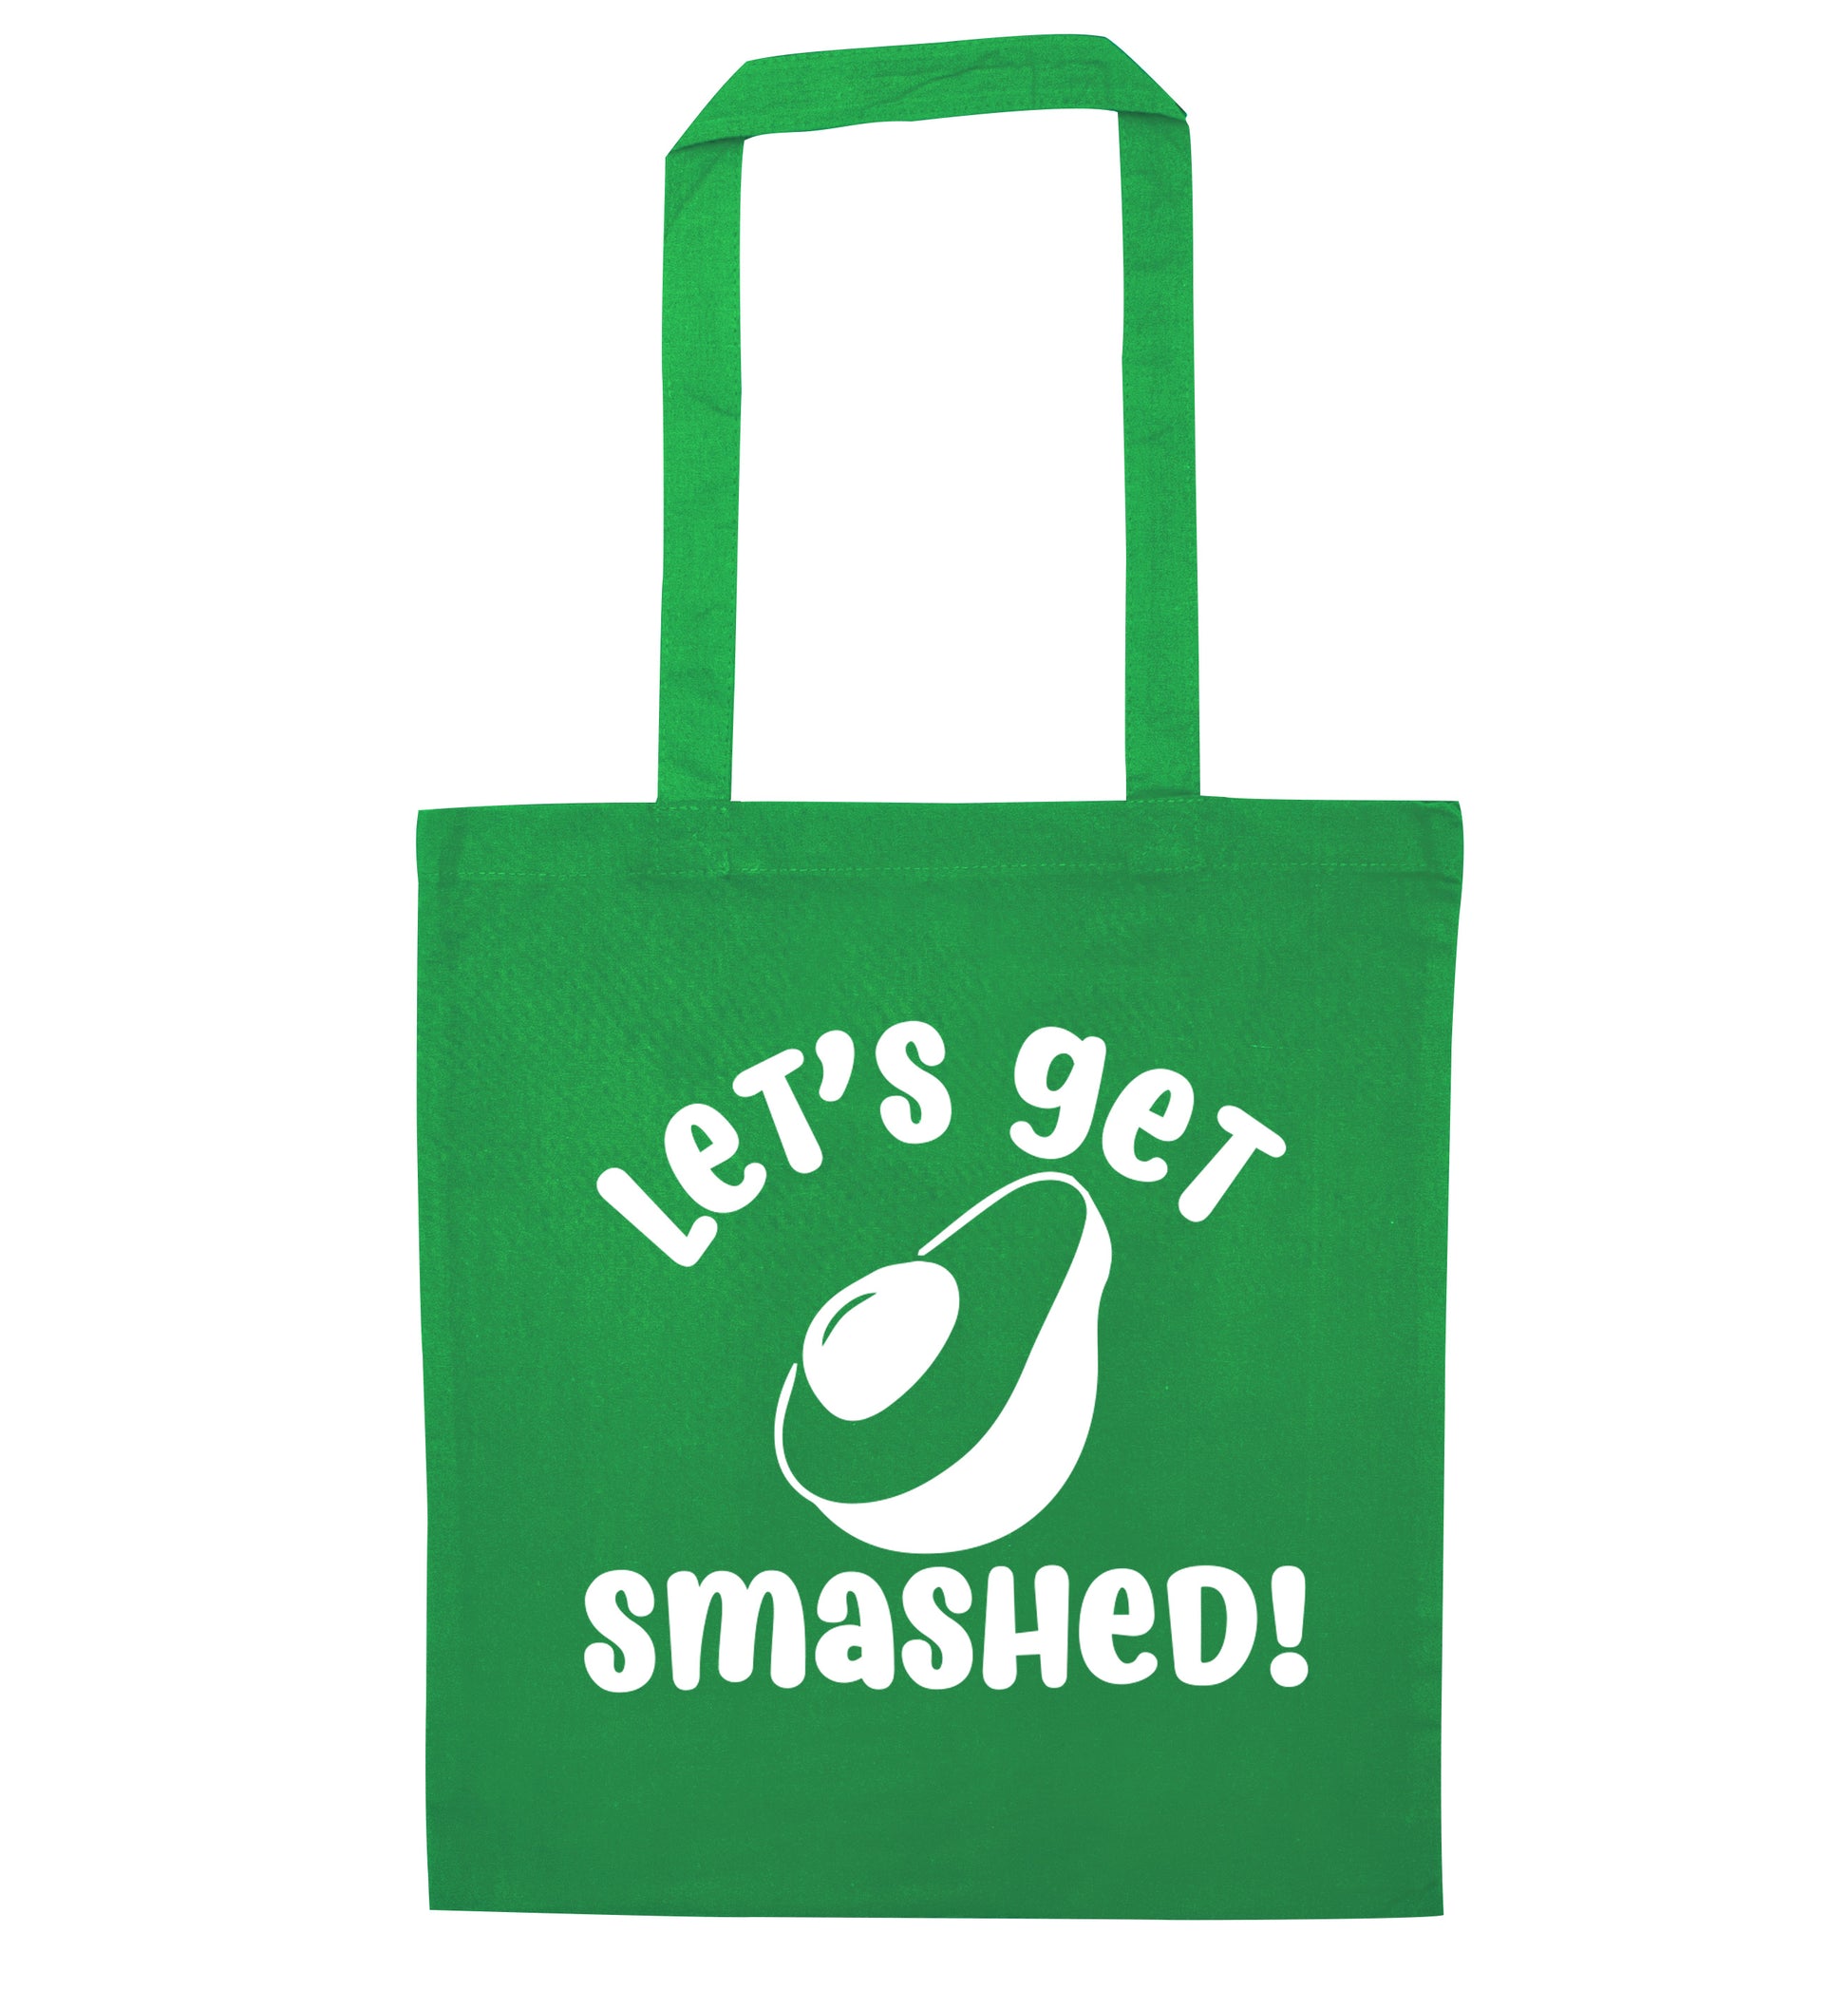 Let's get smashed green tote bag